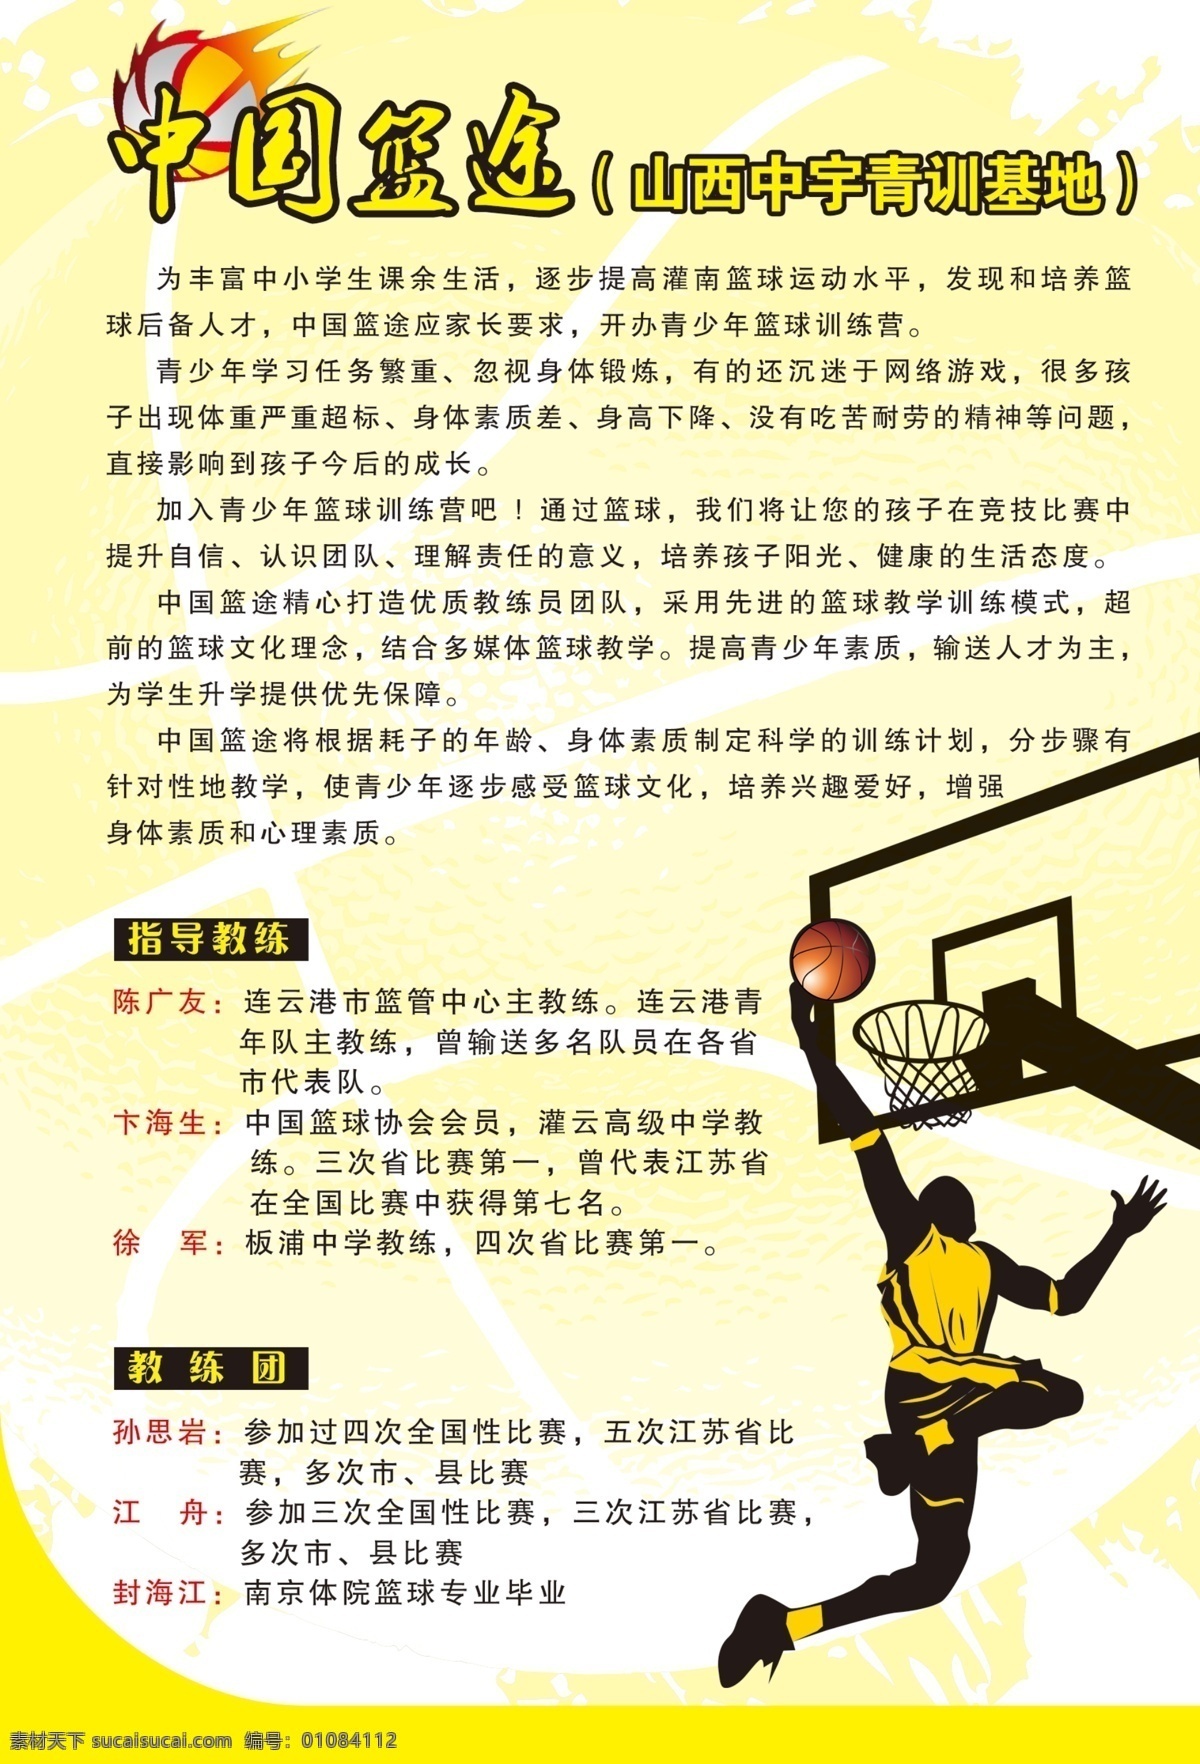 中国篮途 篮球 剪影 球 投篮 影子 广告设计模板 源文件